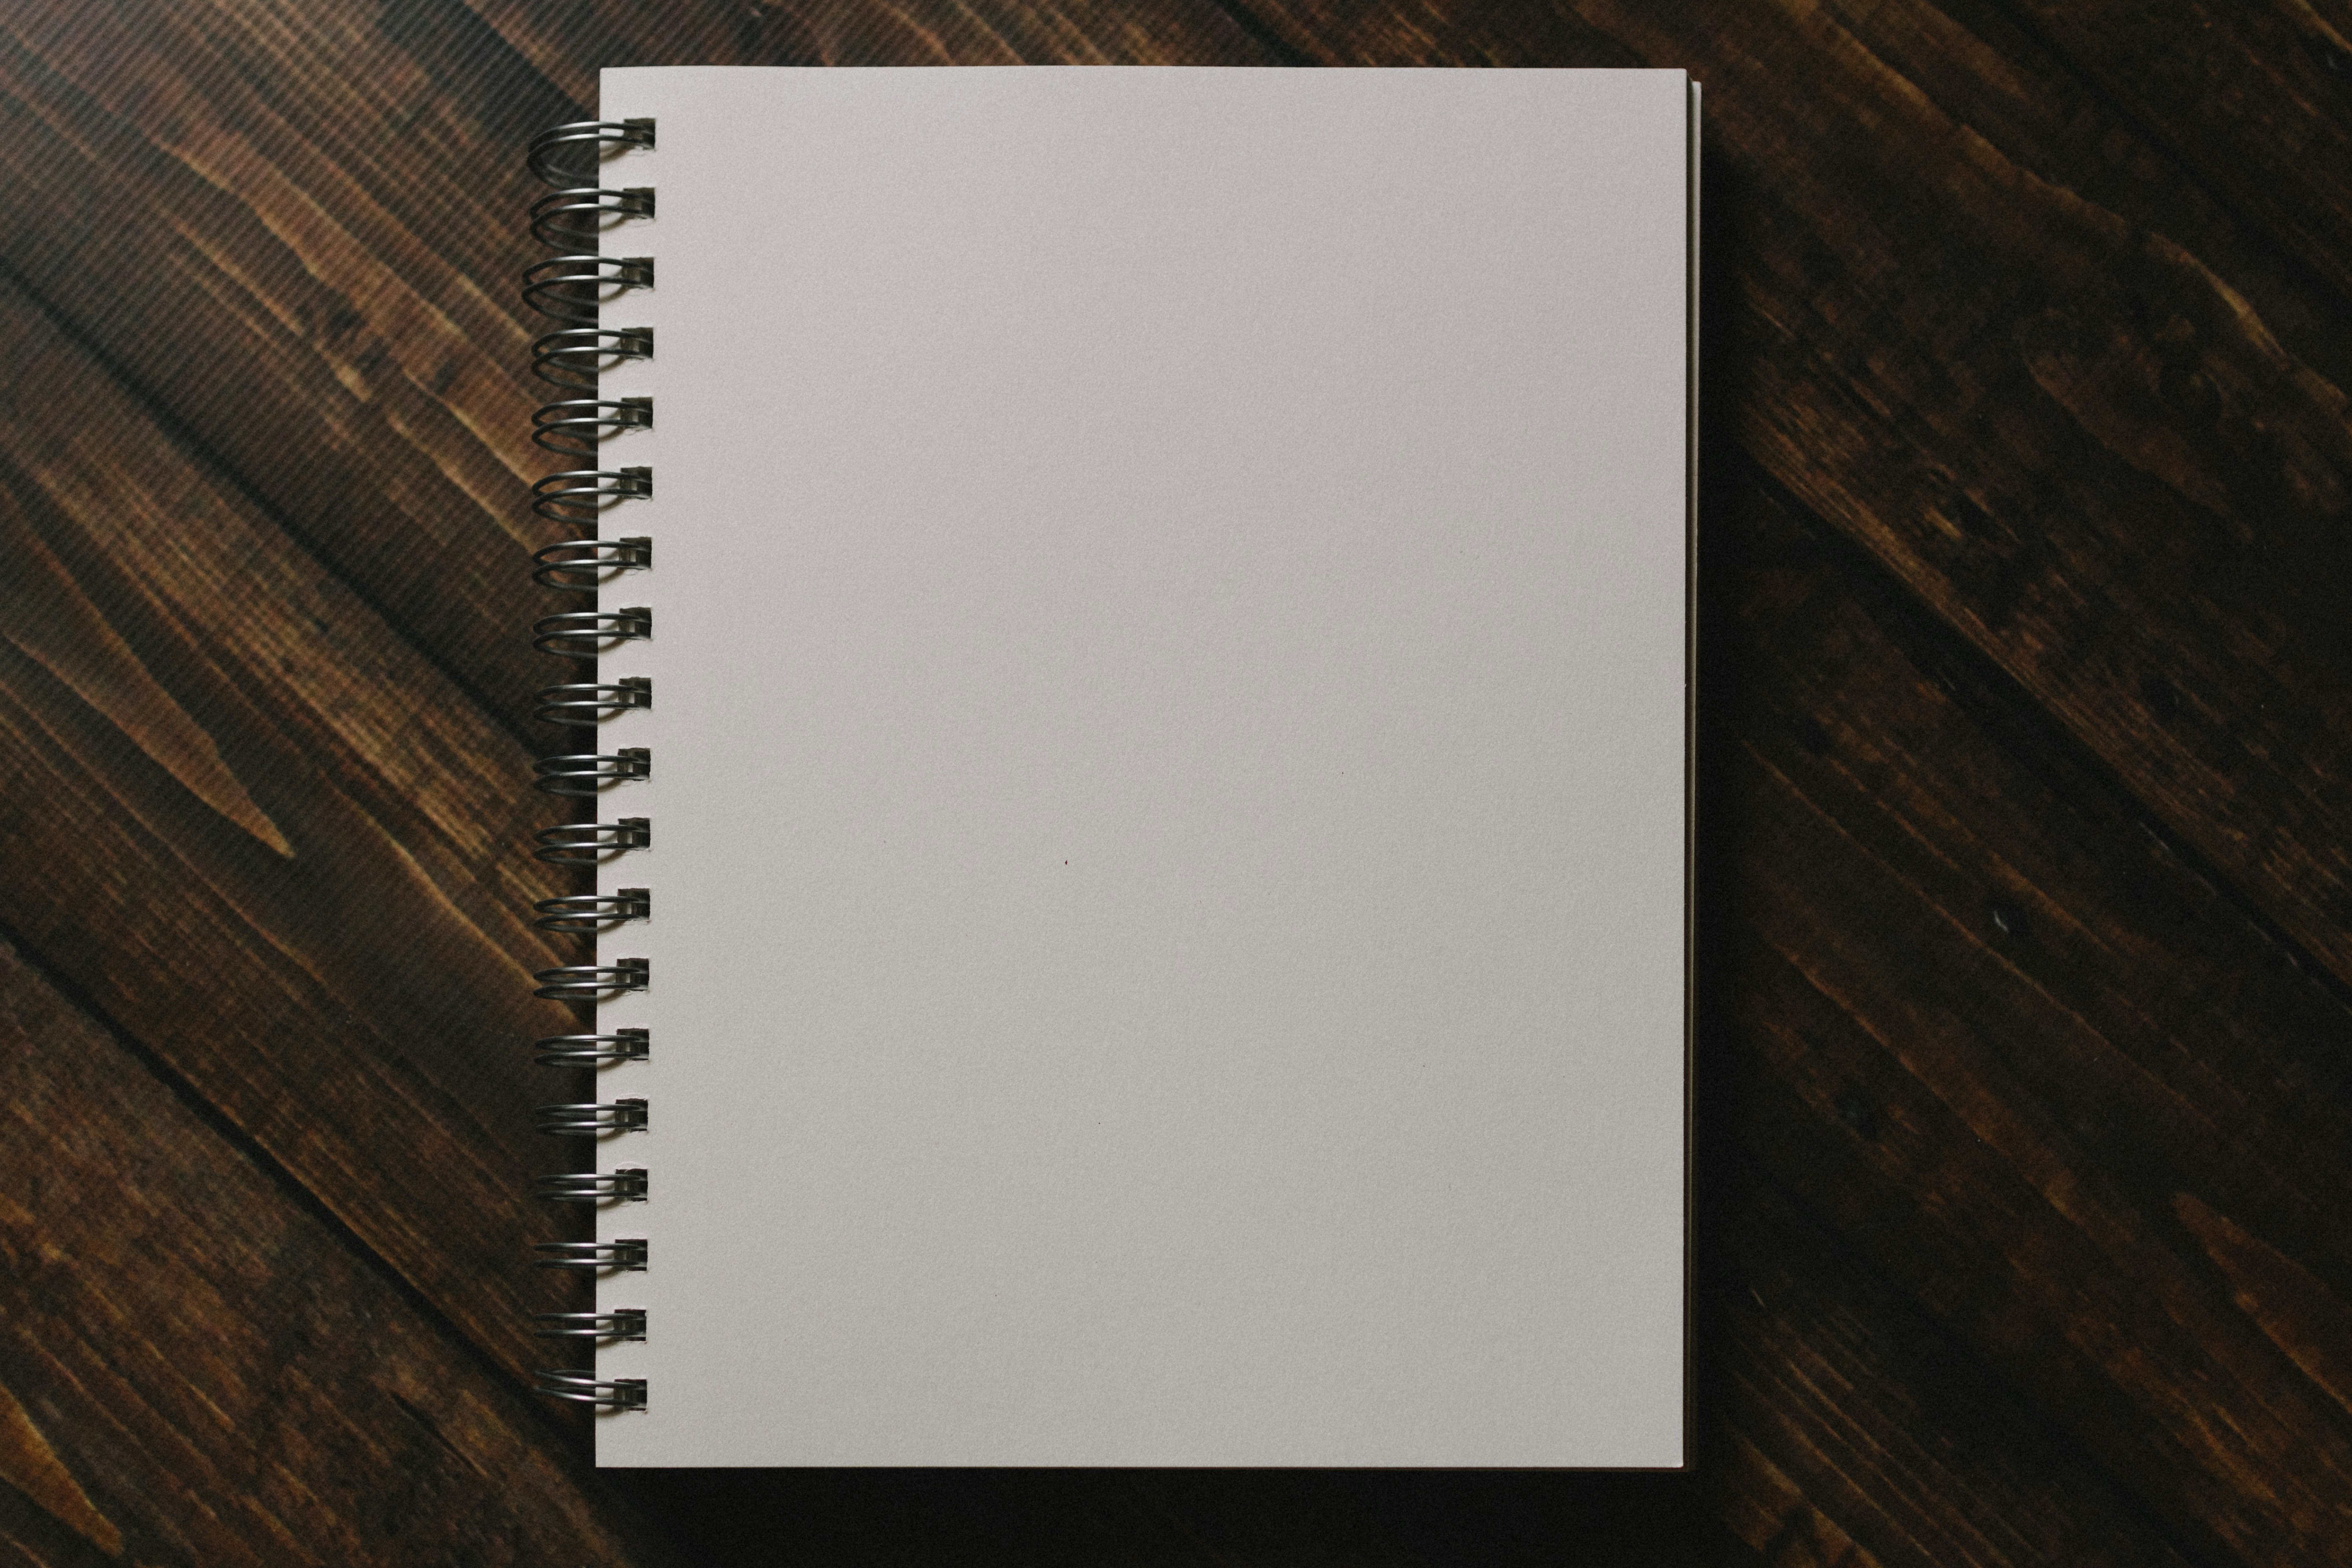 Blank spiral notebook